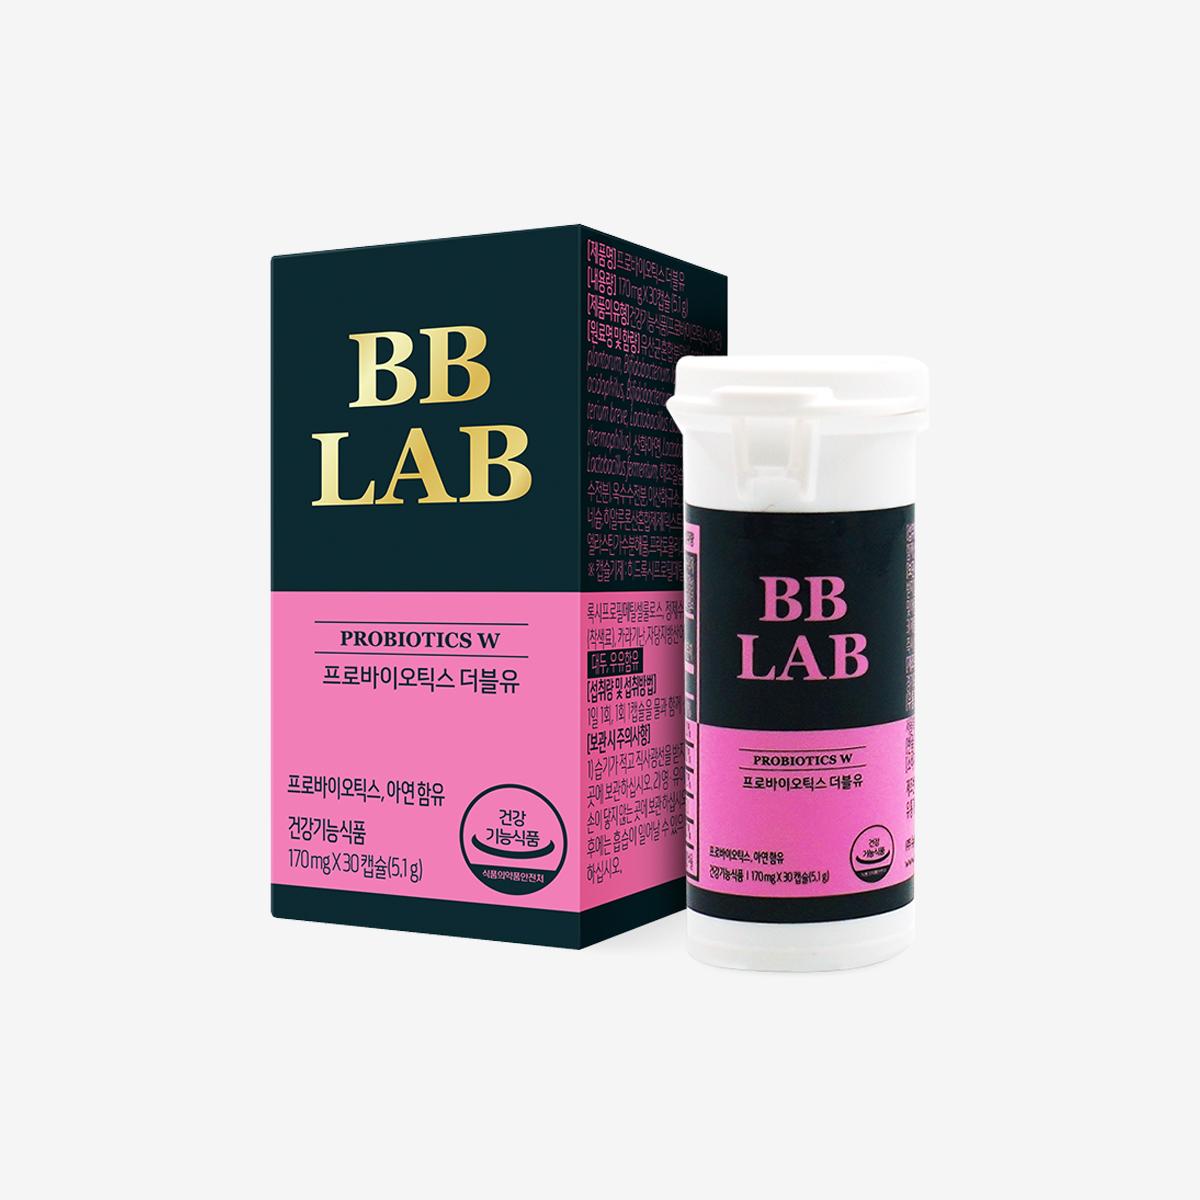 BB Lab Probiotics W. (30 capsules)